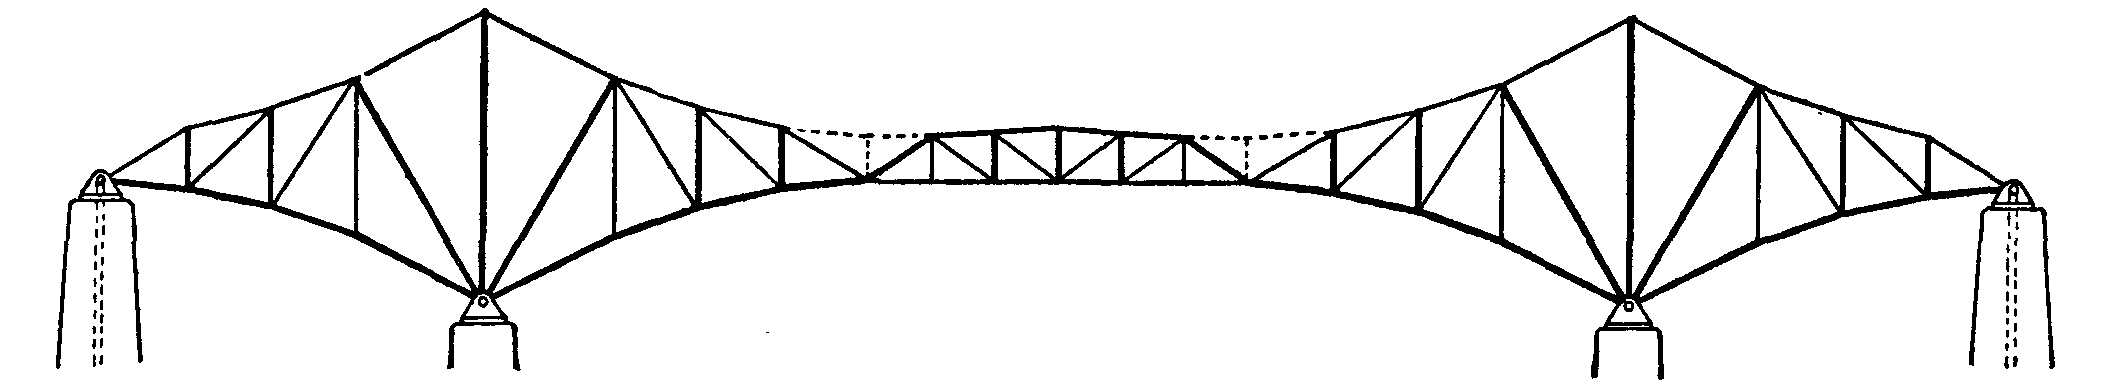 Beam Bridge PNG - 137879